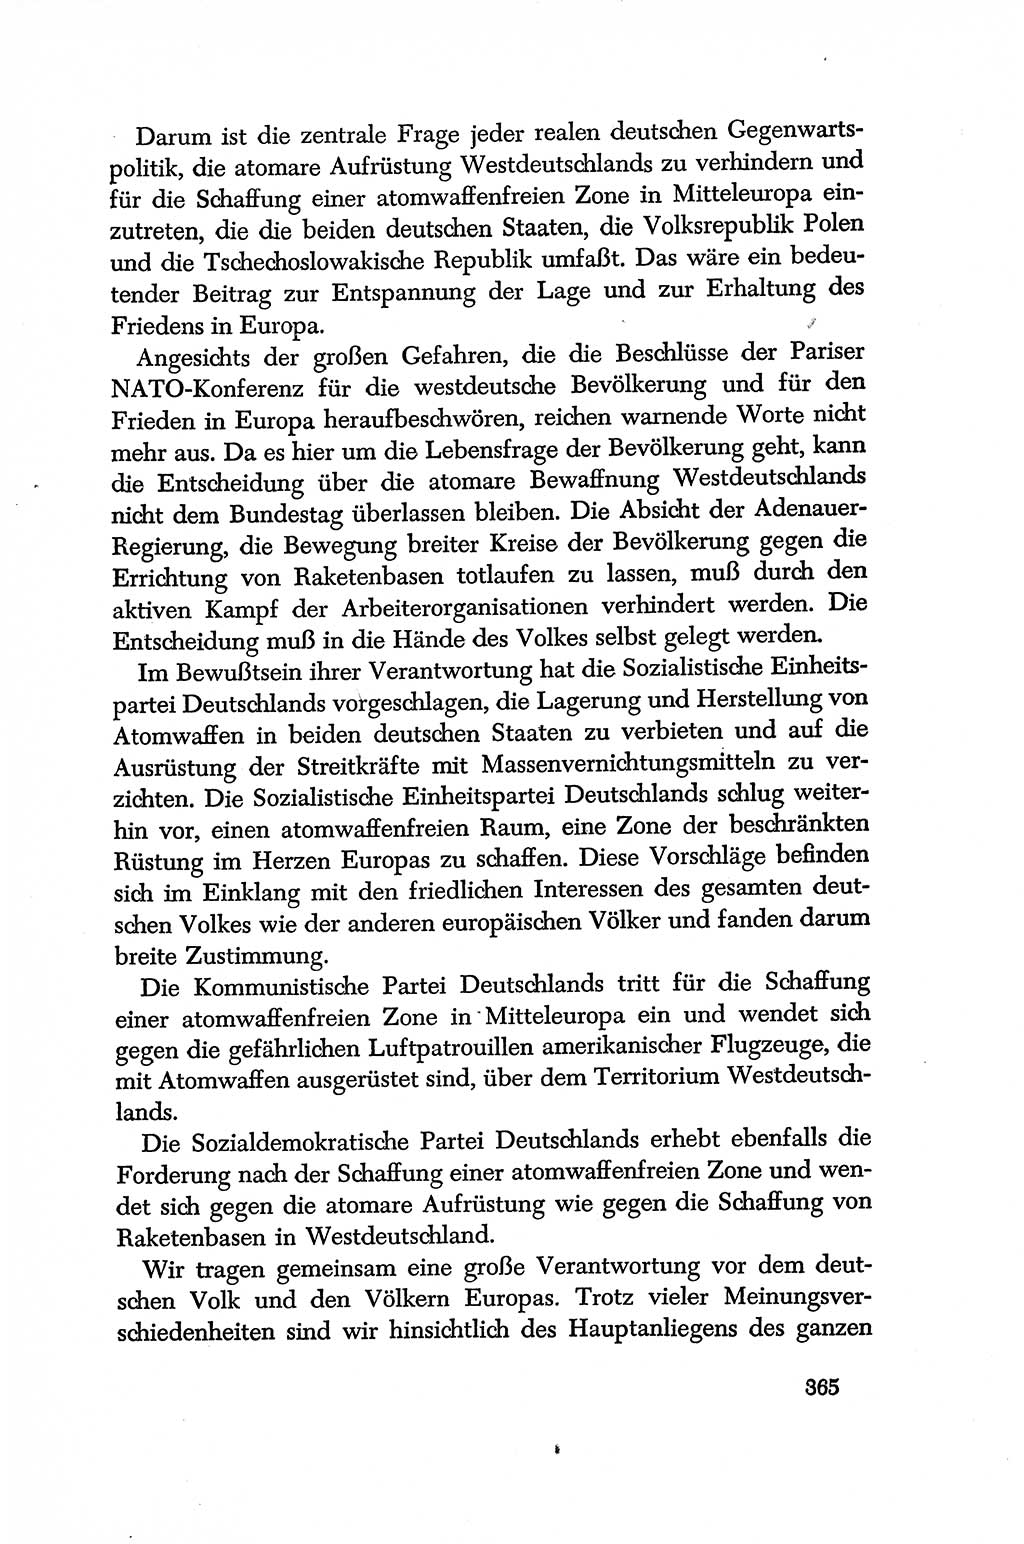 Dokumente der Sozialistischen Einheitspartei Deutschlands (SED) [Deutsche Demokratische Republik (DDR)] 1956-1957, Seite 365 (Dok. SED DDR 1956-1957, S. 365)